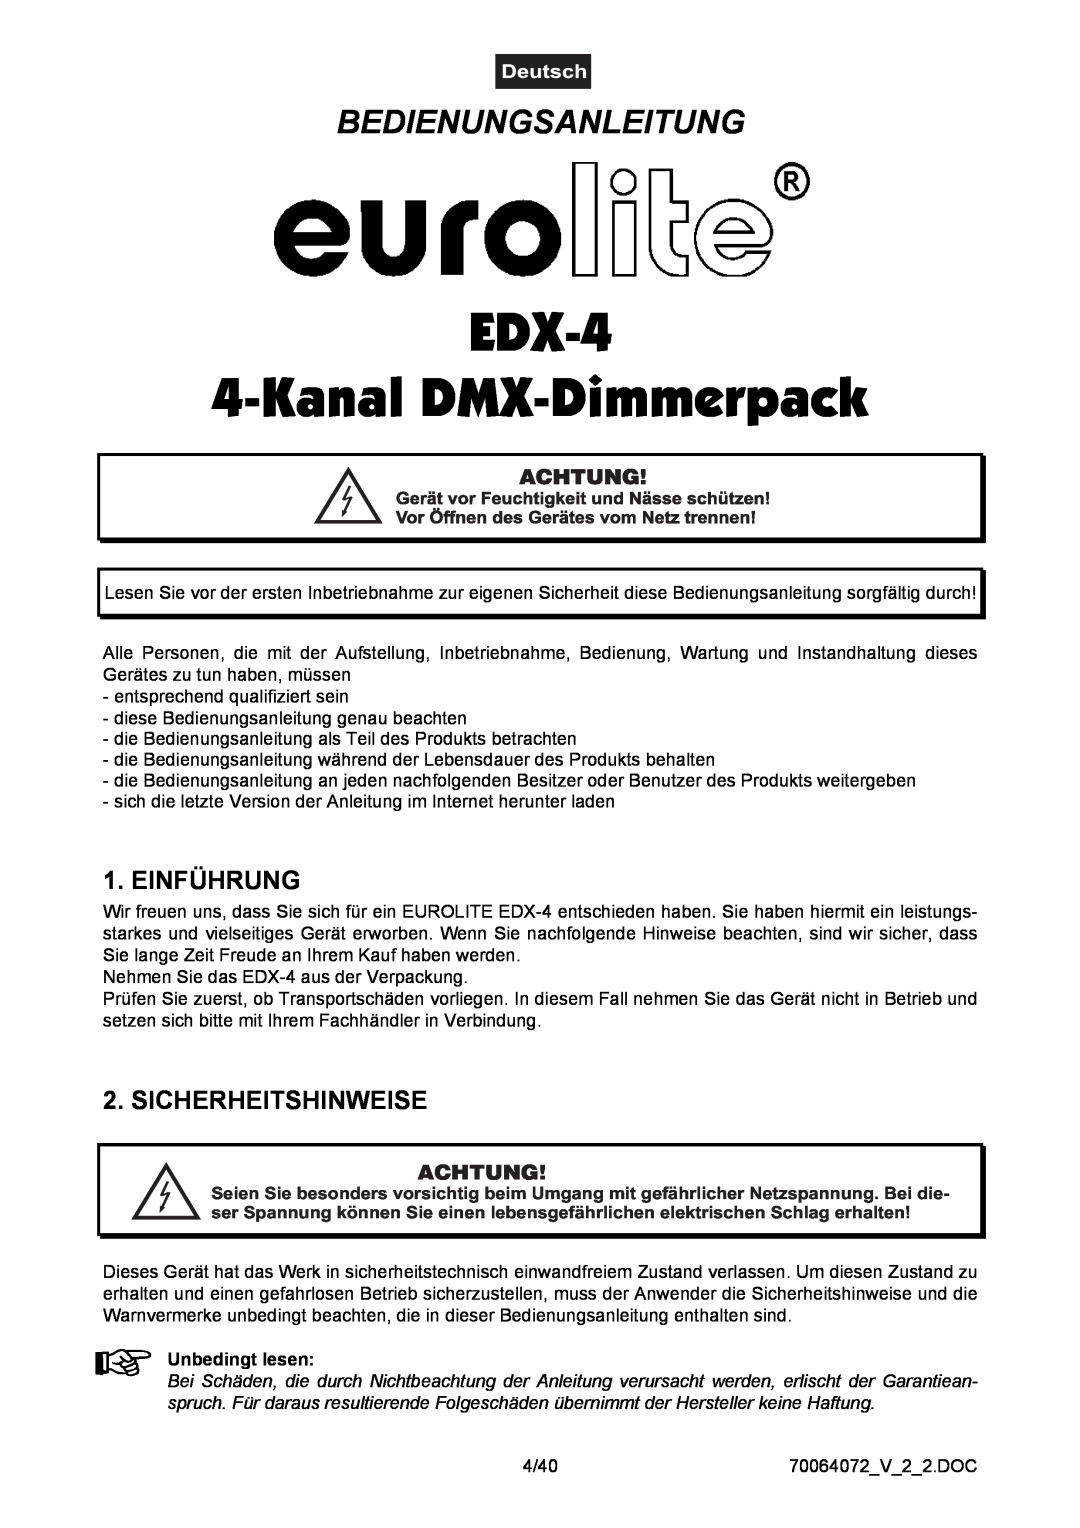 EuroLite Cases user manual EDX-4 4-Kanal DMX-Dimmerpack, Bedienungsanleitung, Einführung, Sicherheitshinweise, Achtung 